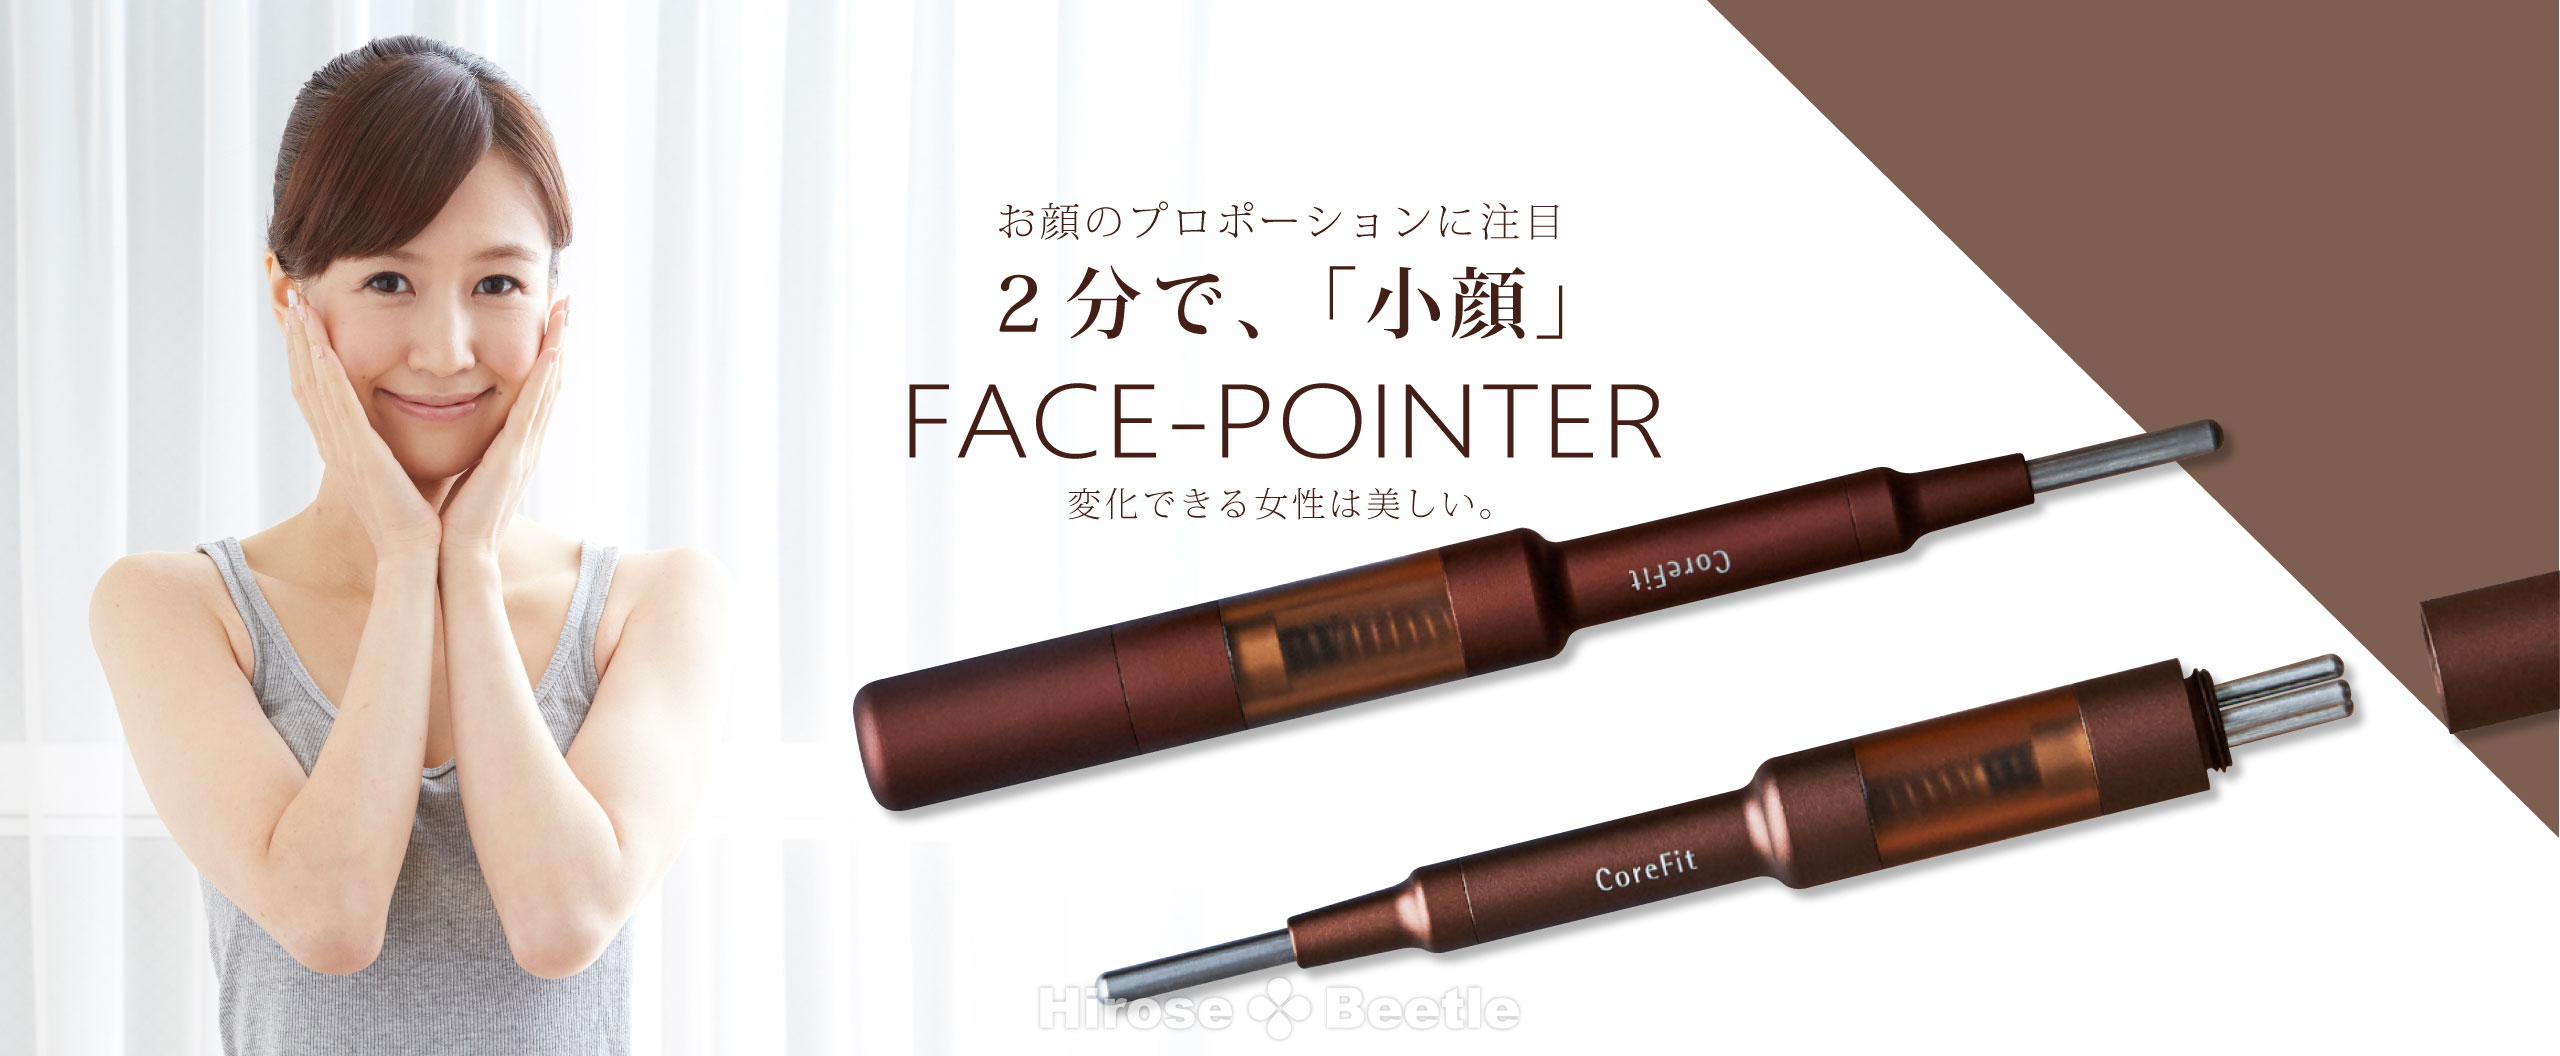 8970円 おトク CORE FIT Face-Pointer